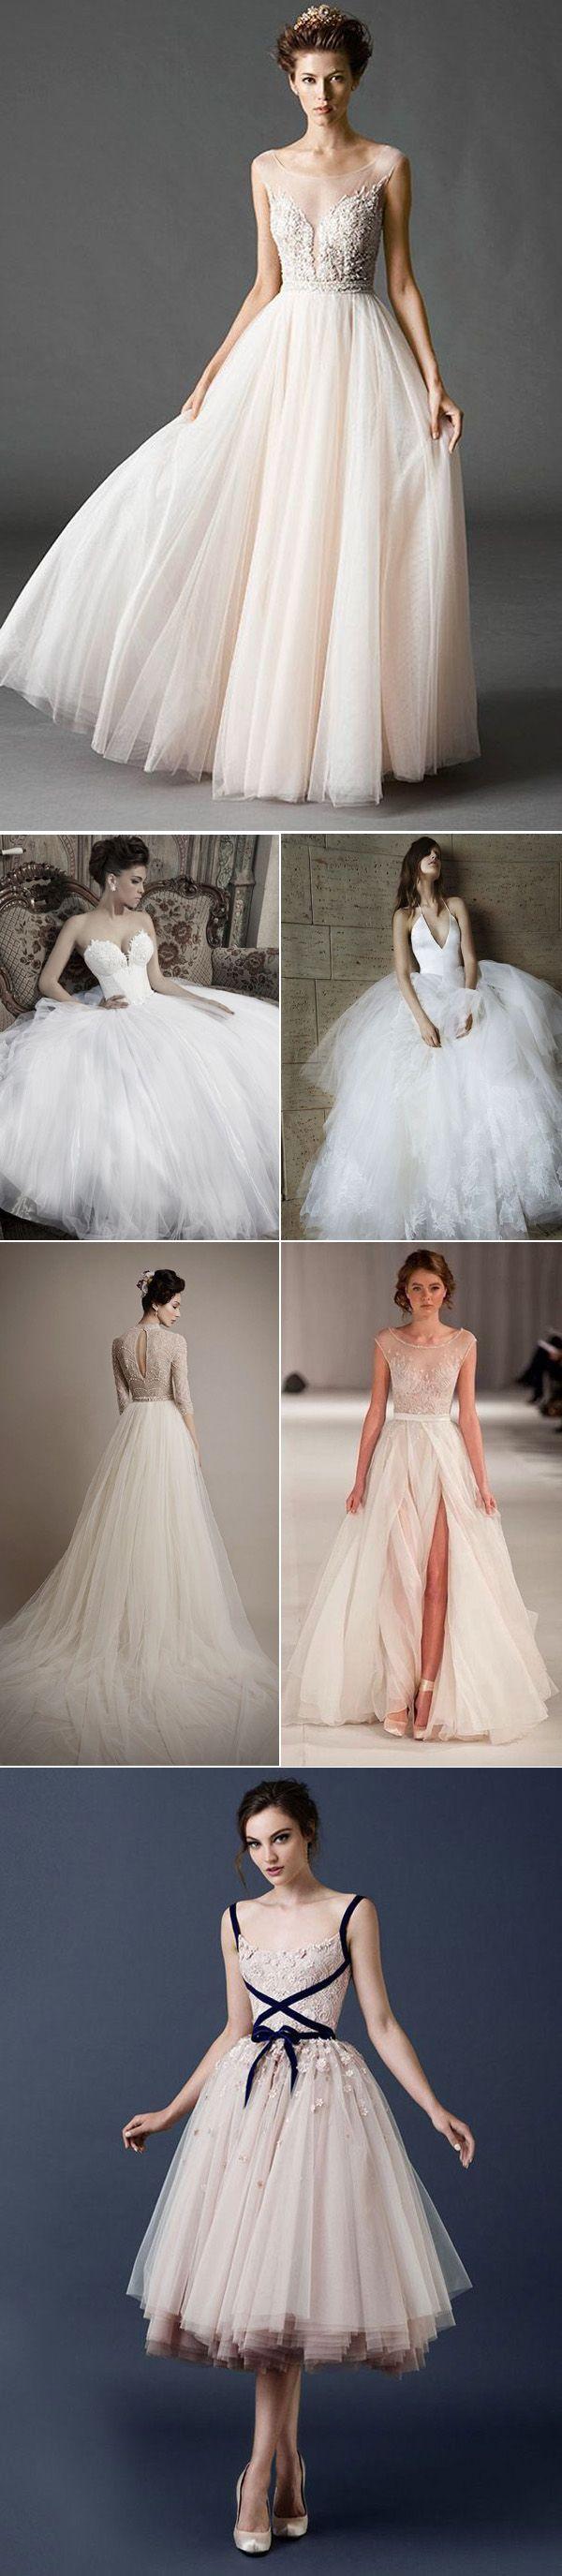 زفاف - Top 9 Trends For Wedding Dresses 2015